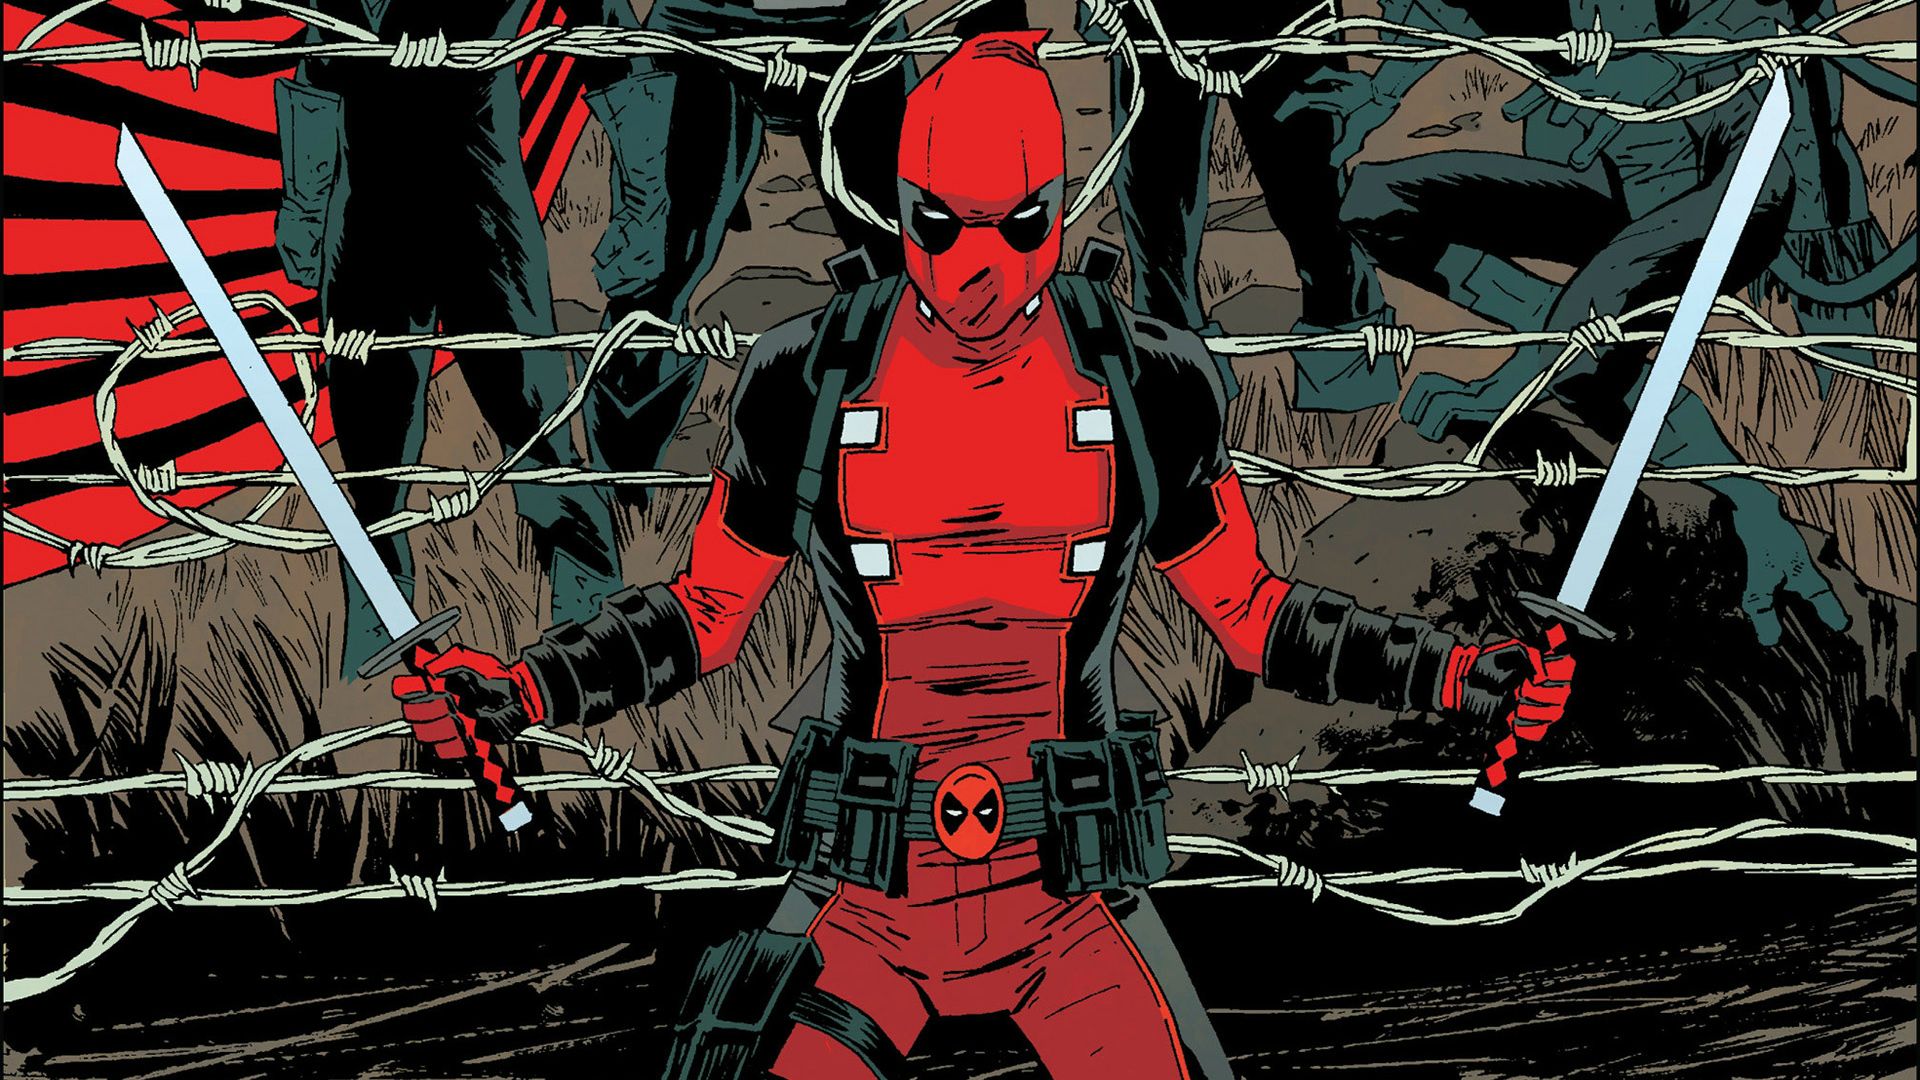 General 1920x1080 Marvel Comics comics Deadpool antiheroes comic art sword weapon barbed wire Wade Wilson